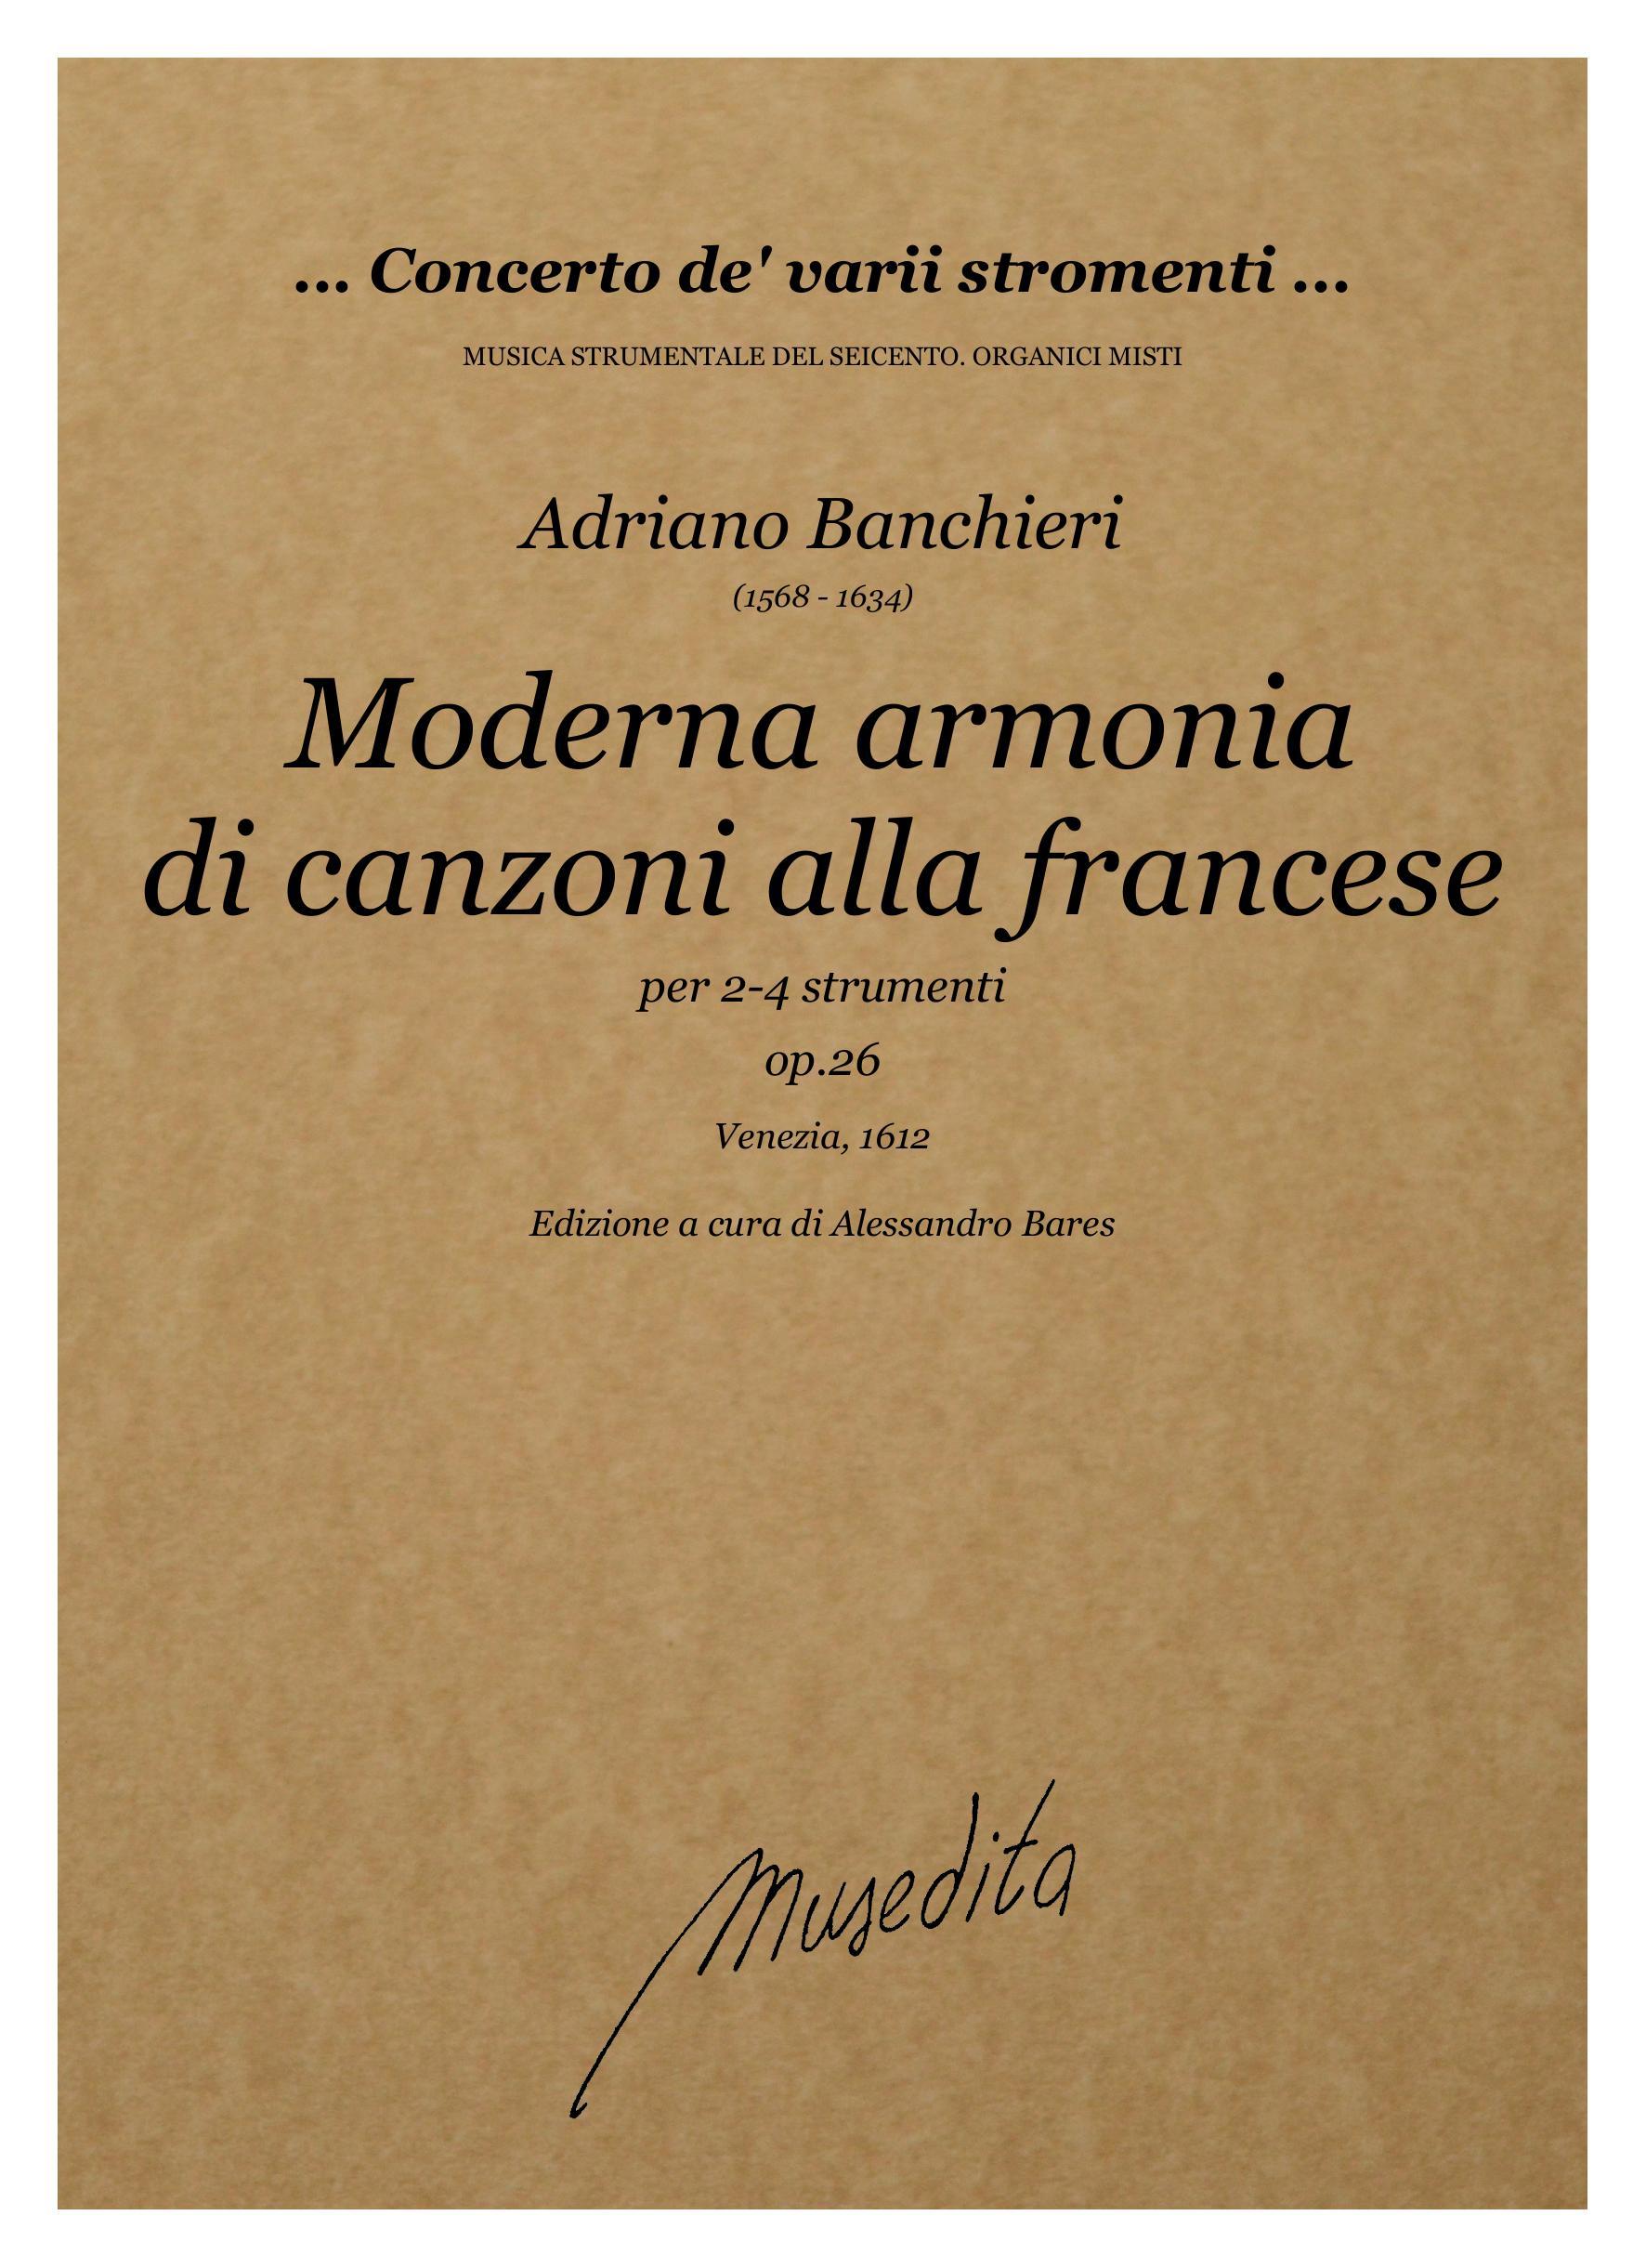 A.Banchieri: Moderna armonia di canzoni alla francese  op.26 (Venezia, 1612)